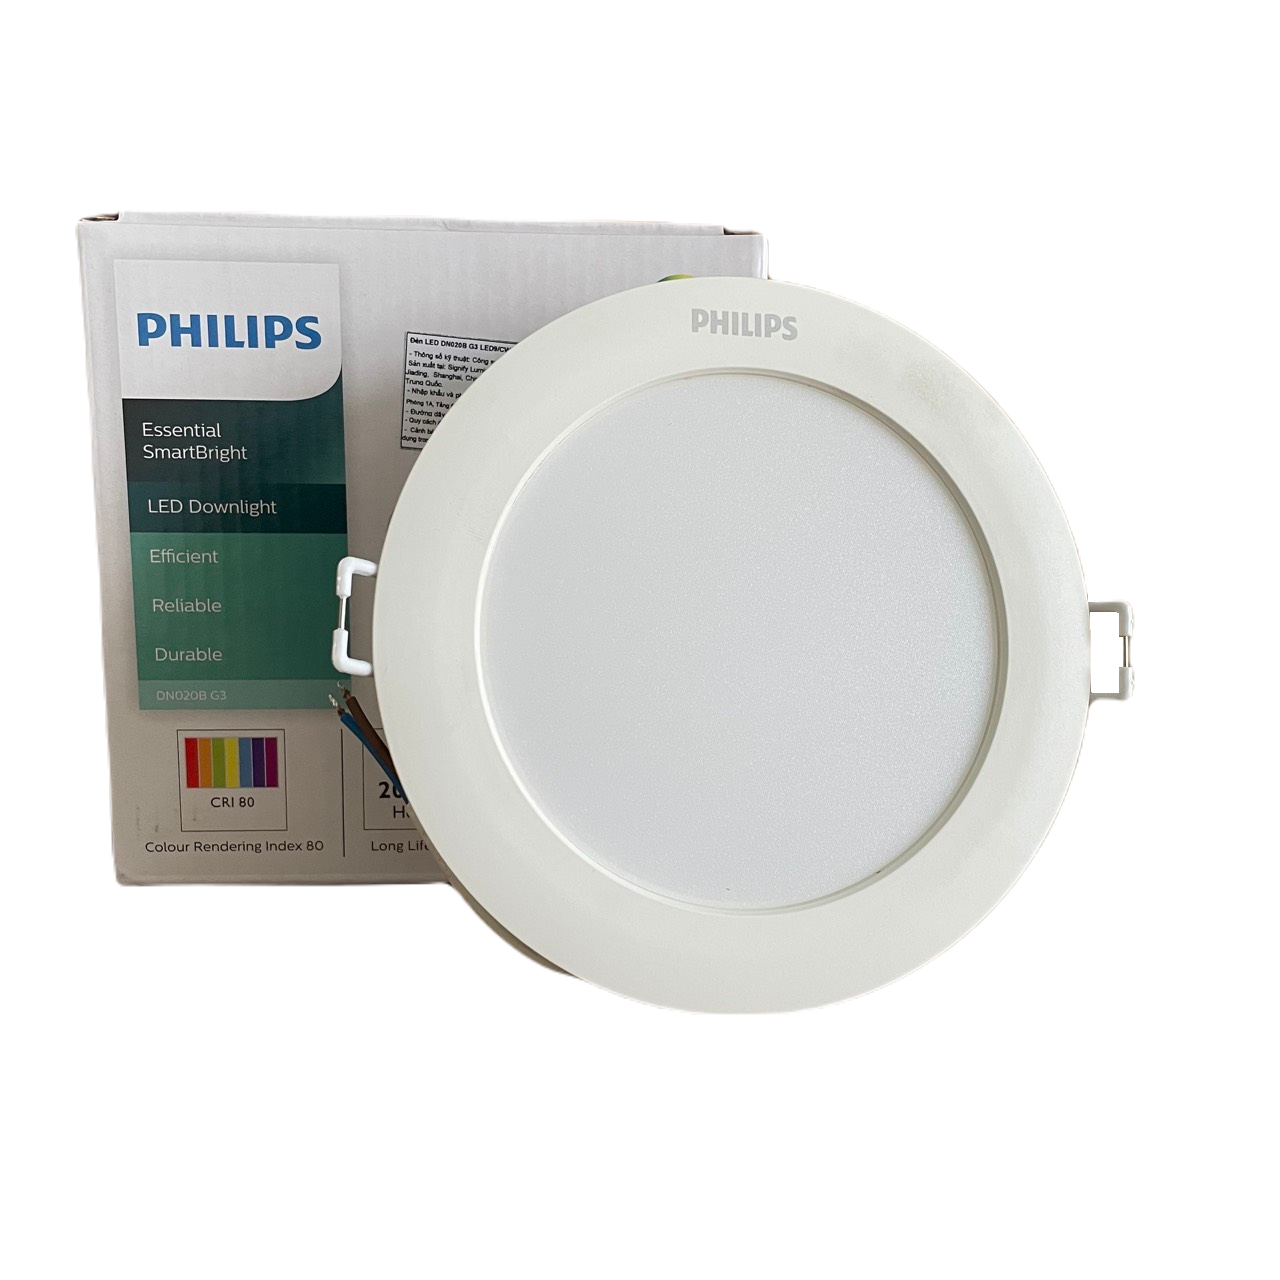 Đèn downlight âm trần LED Philips Essential SmartBright DN020B G3 LED20/CW 23W 220-240V D200 GM